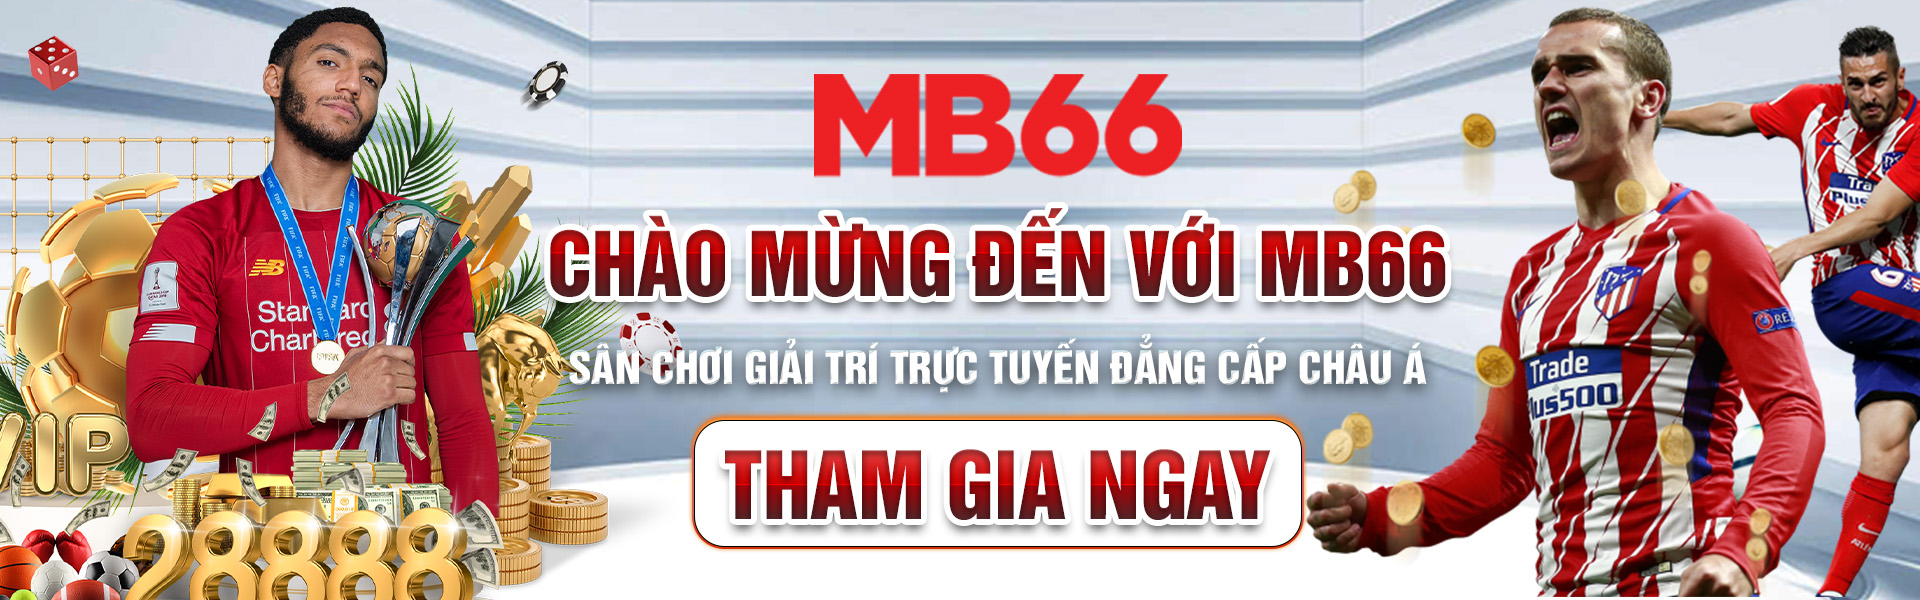 2-chao-mung-den-voi-mb66